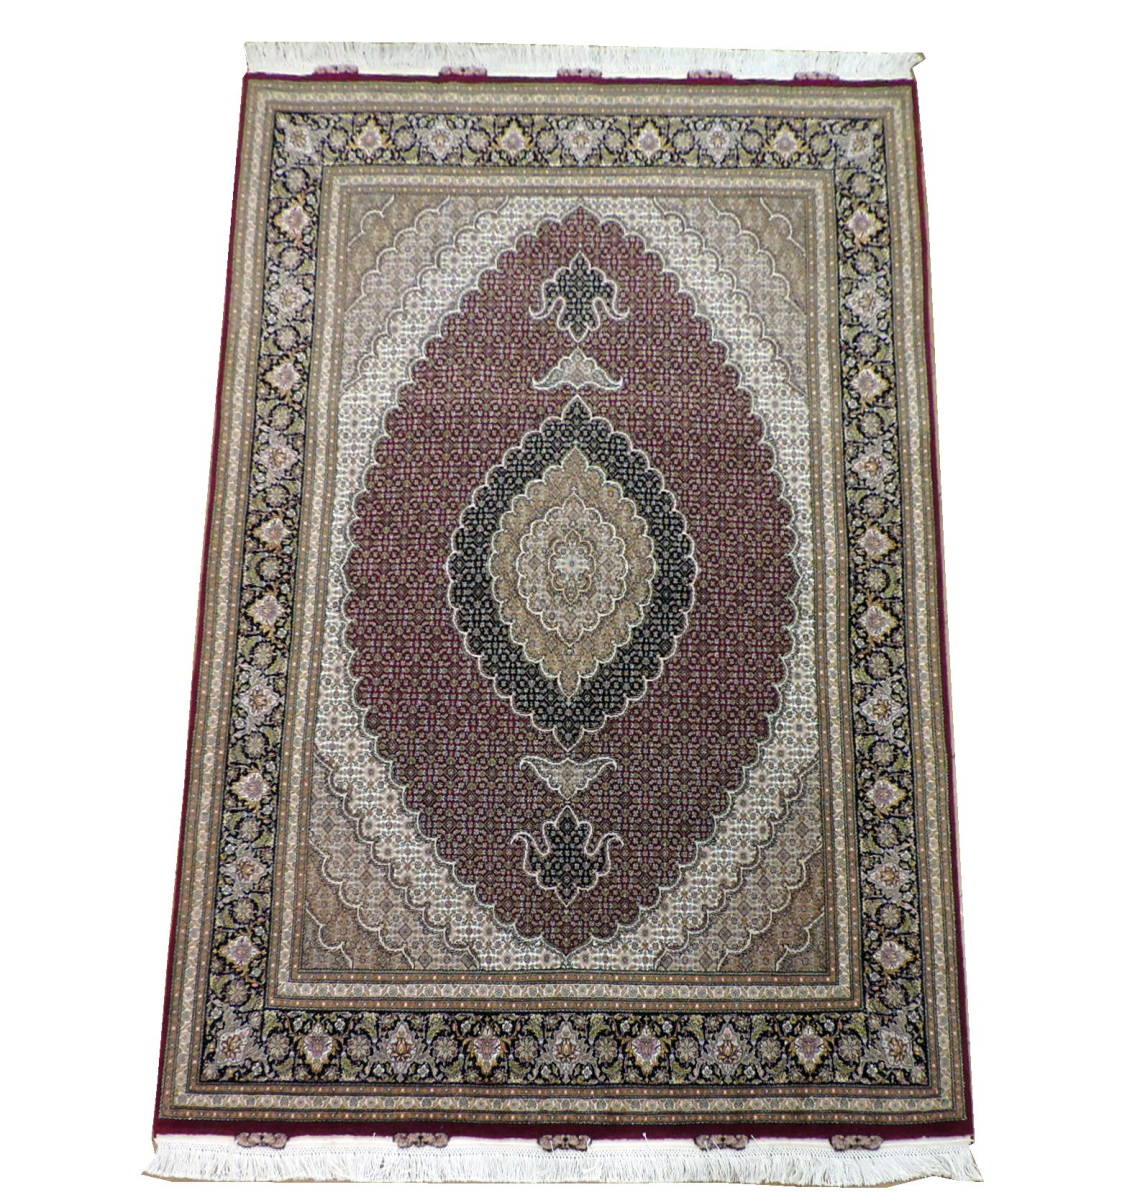 ペルシャ絨毯 カーペット ラグ ウール&シルク 手織り 高級 ペルシャ絨毯の本場 イラン タブリーズ産 マヒーデザイン 213cm×148cm 本物保証